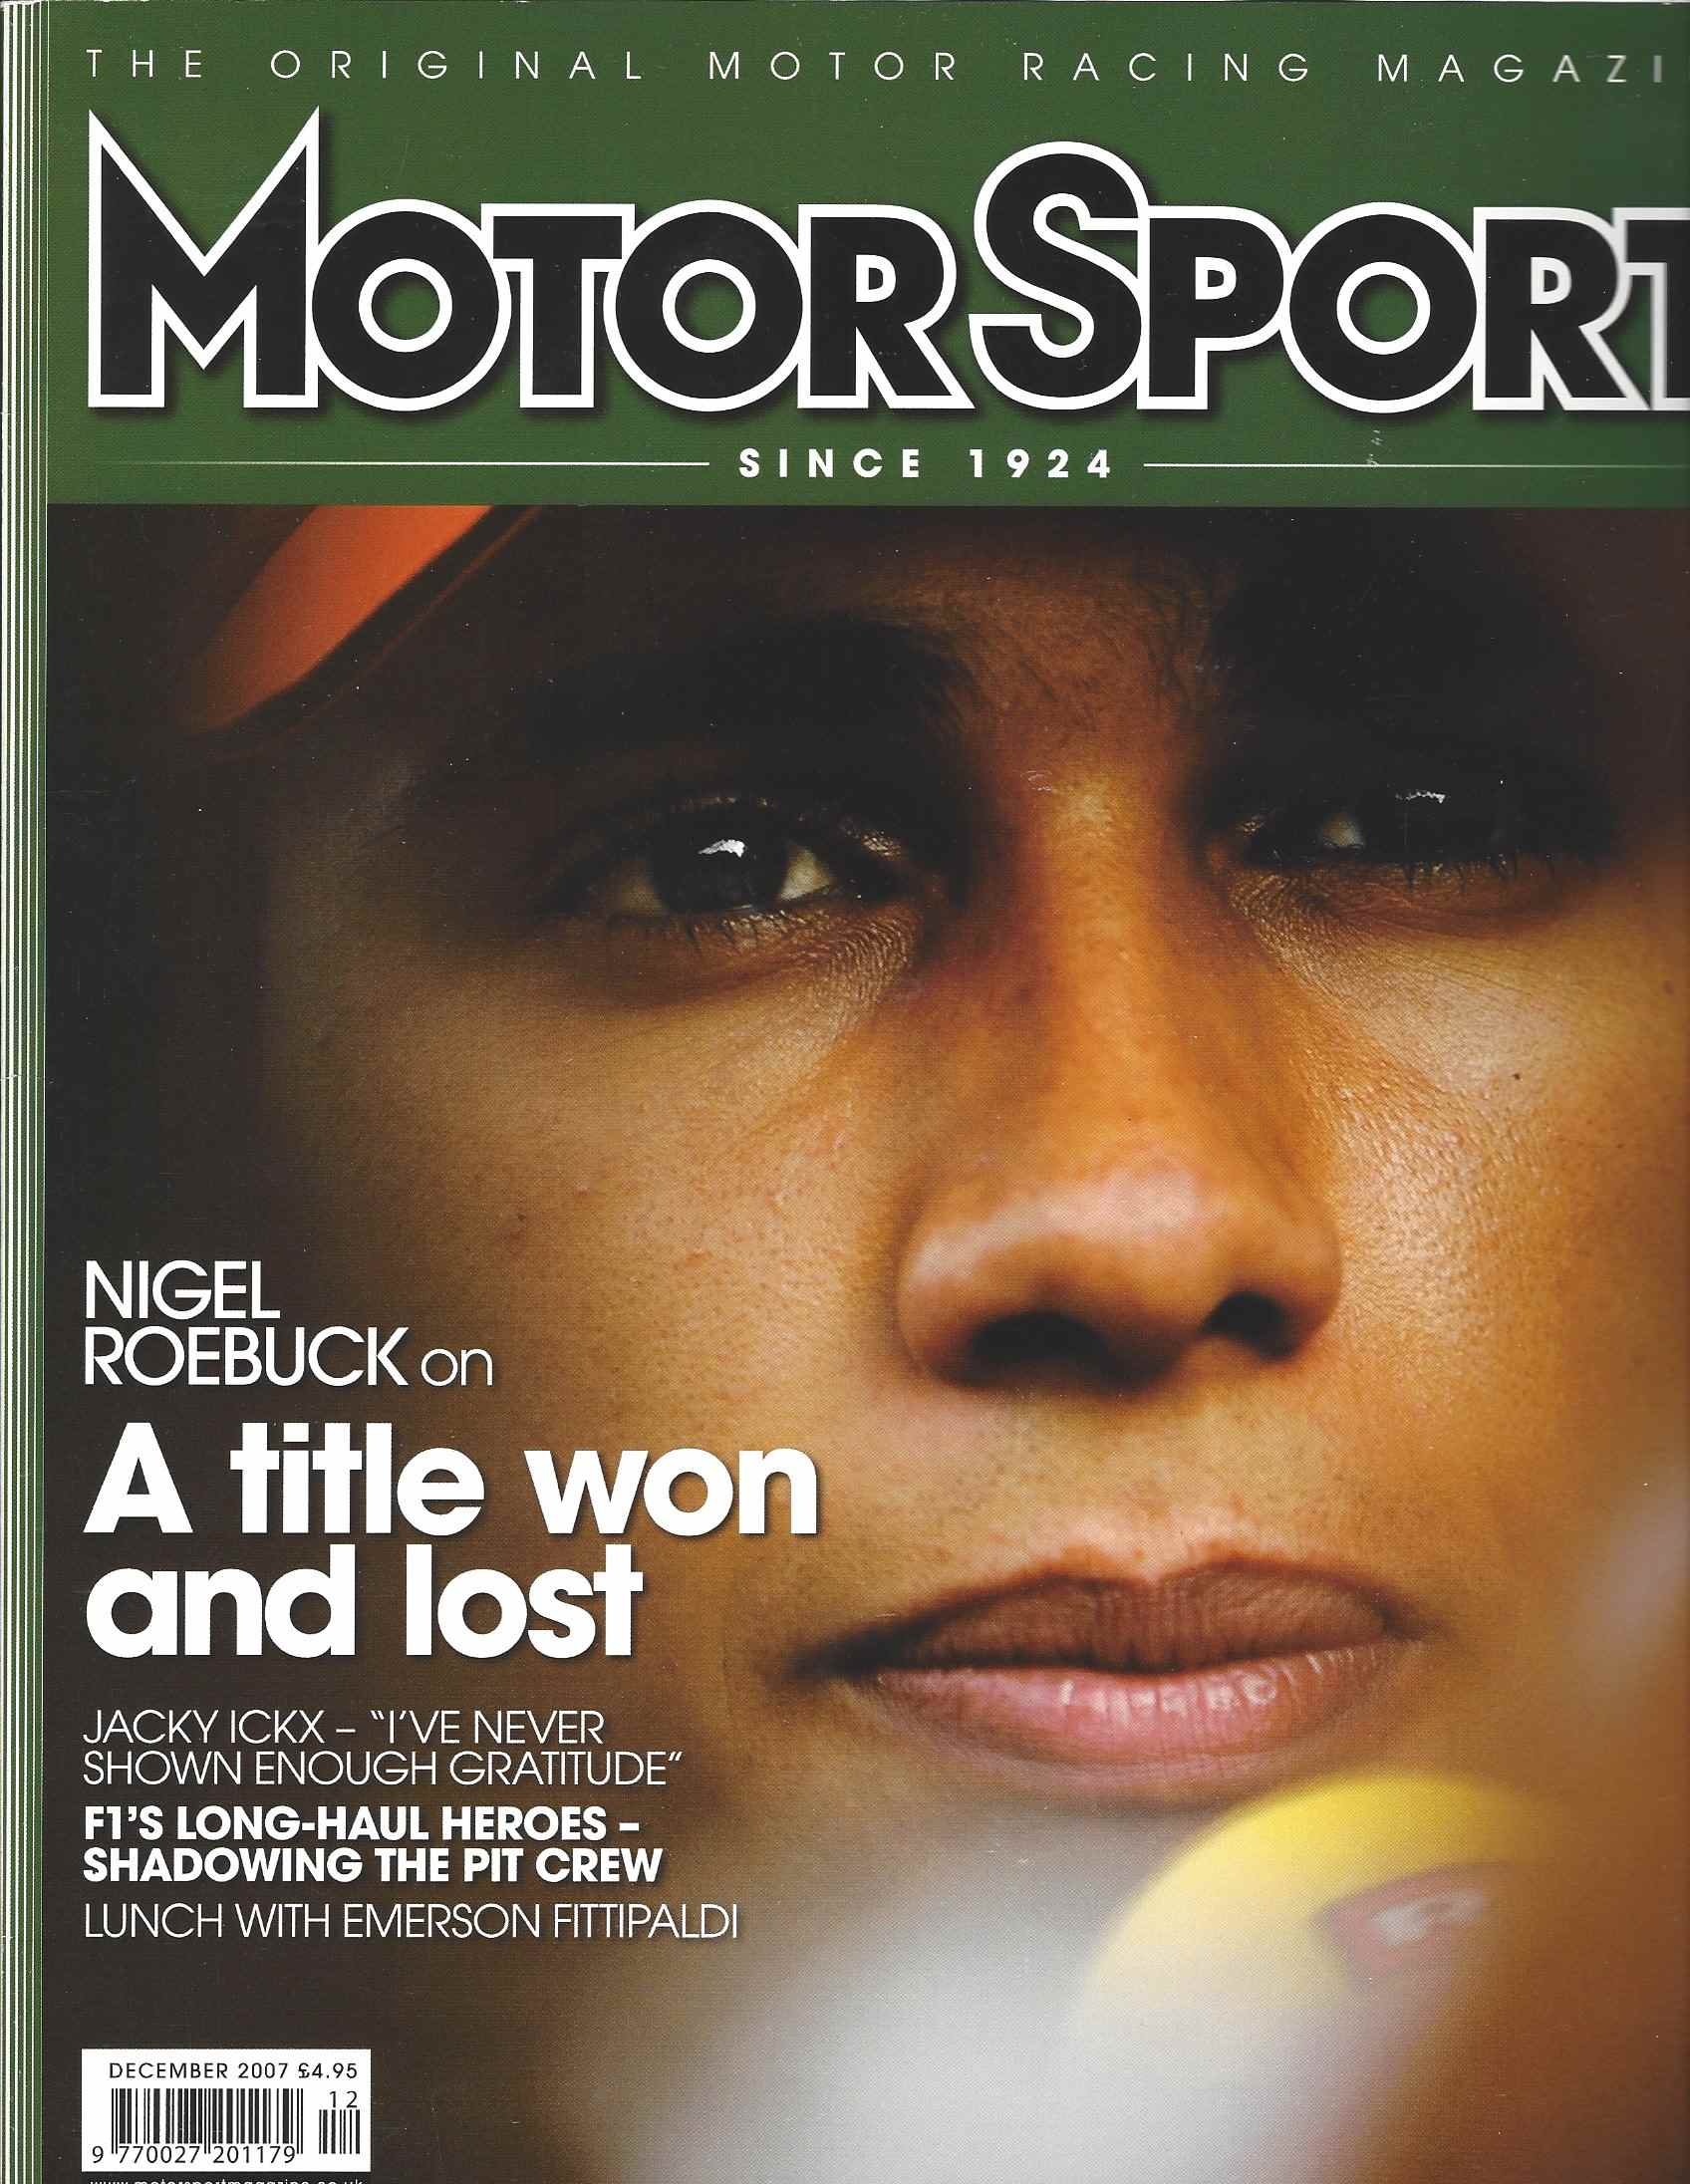 A cover of The Original Motor Racing Magazine